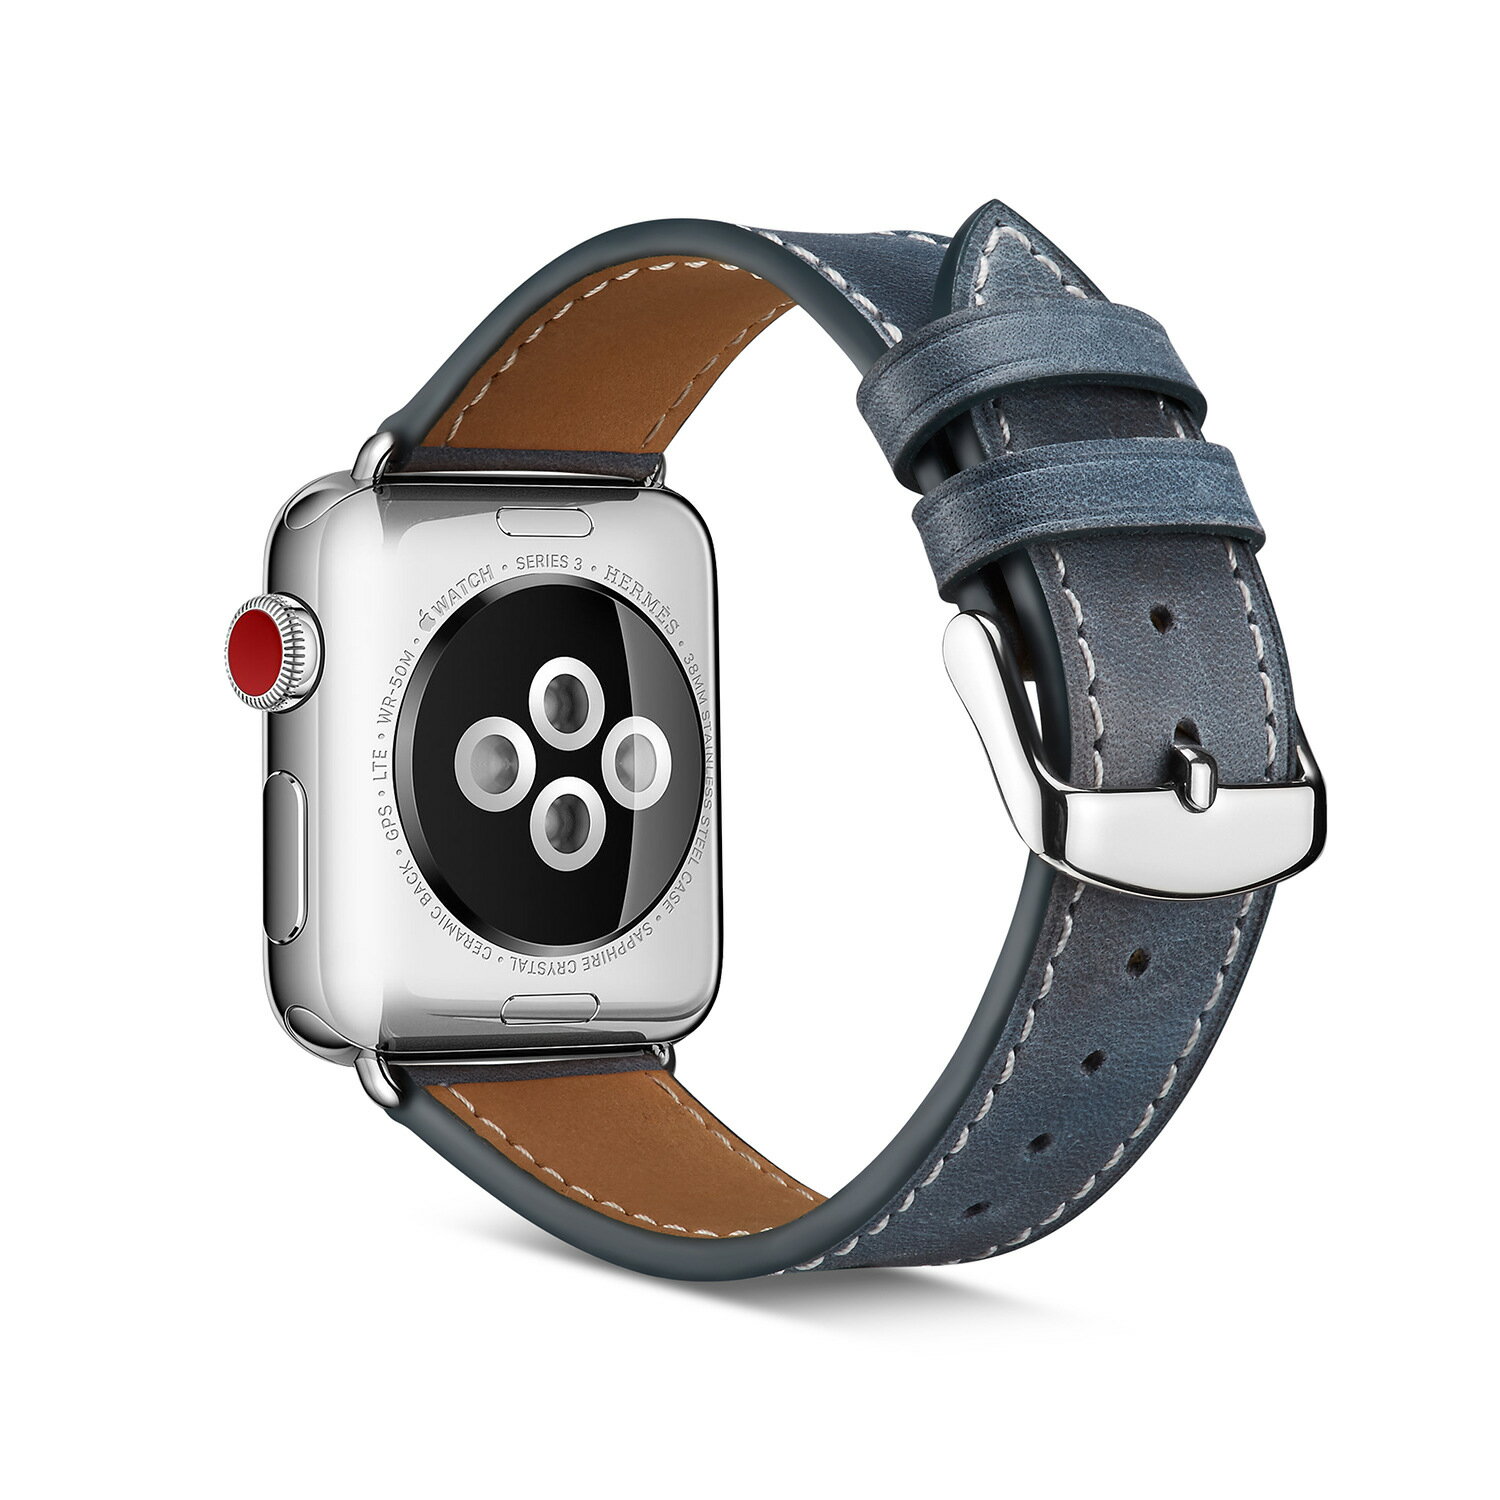 iwatch ベルト Apple Watch バンド 38mm 42mm アップルウォッチ ベルト 本革レザー製 ビジネススタイル iwatch ベルト 38mm 42mm バンド 交換用バンド